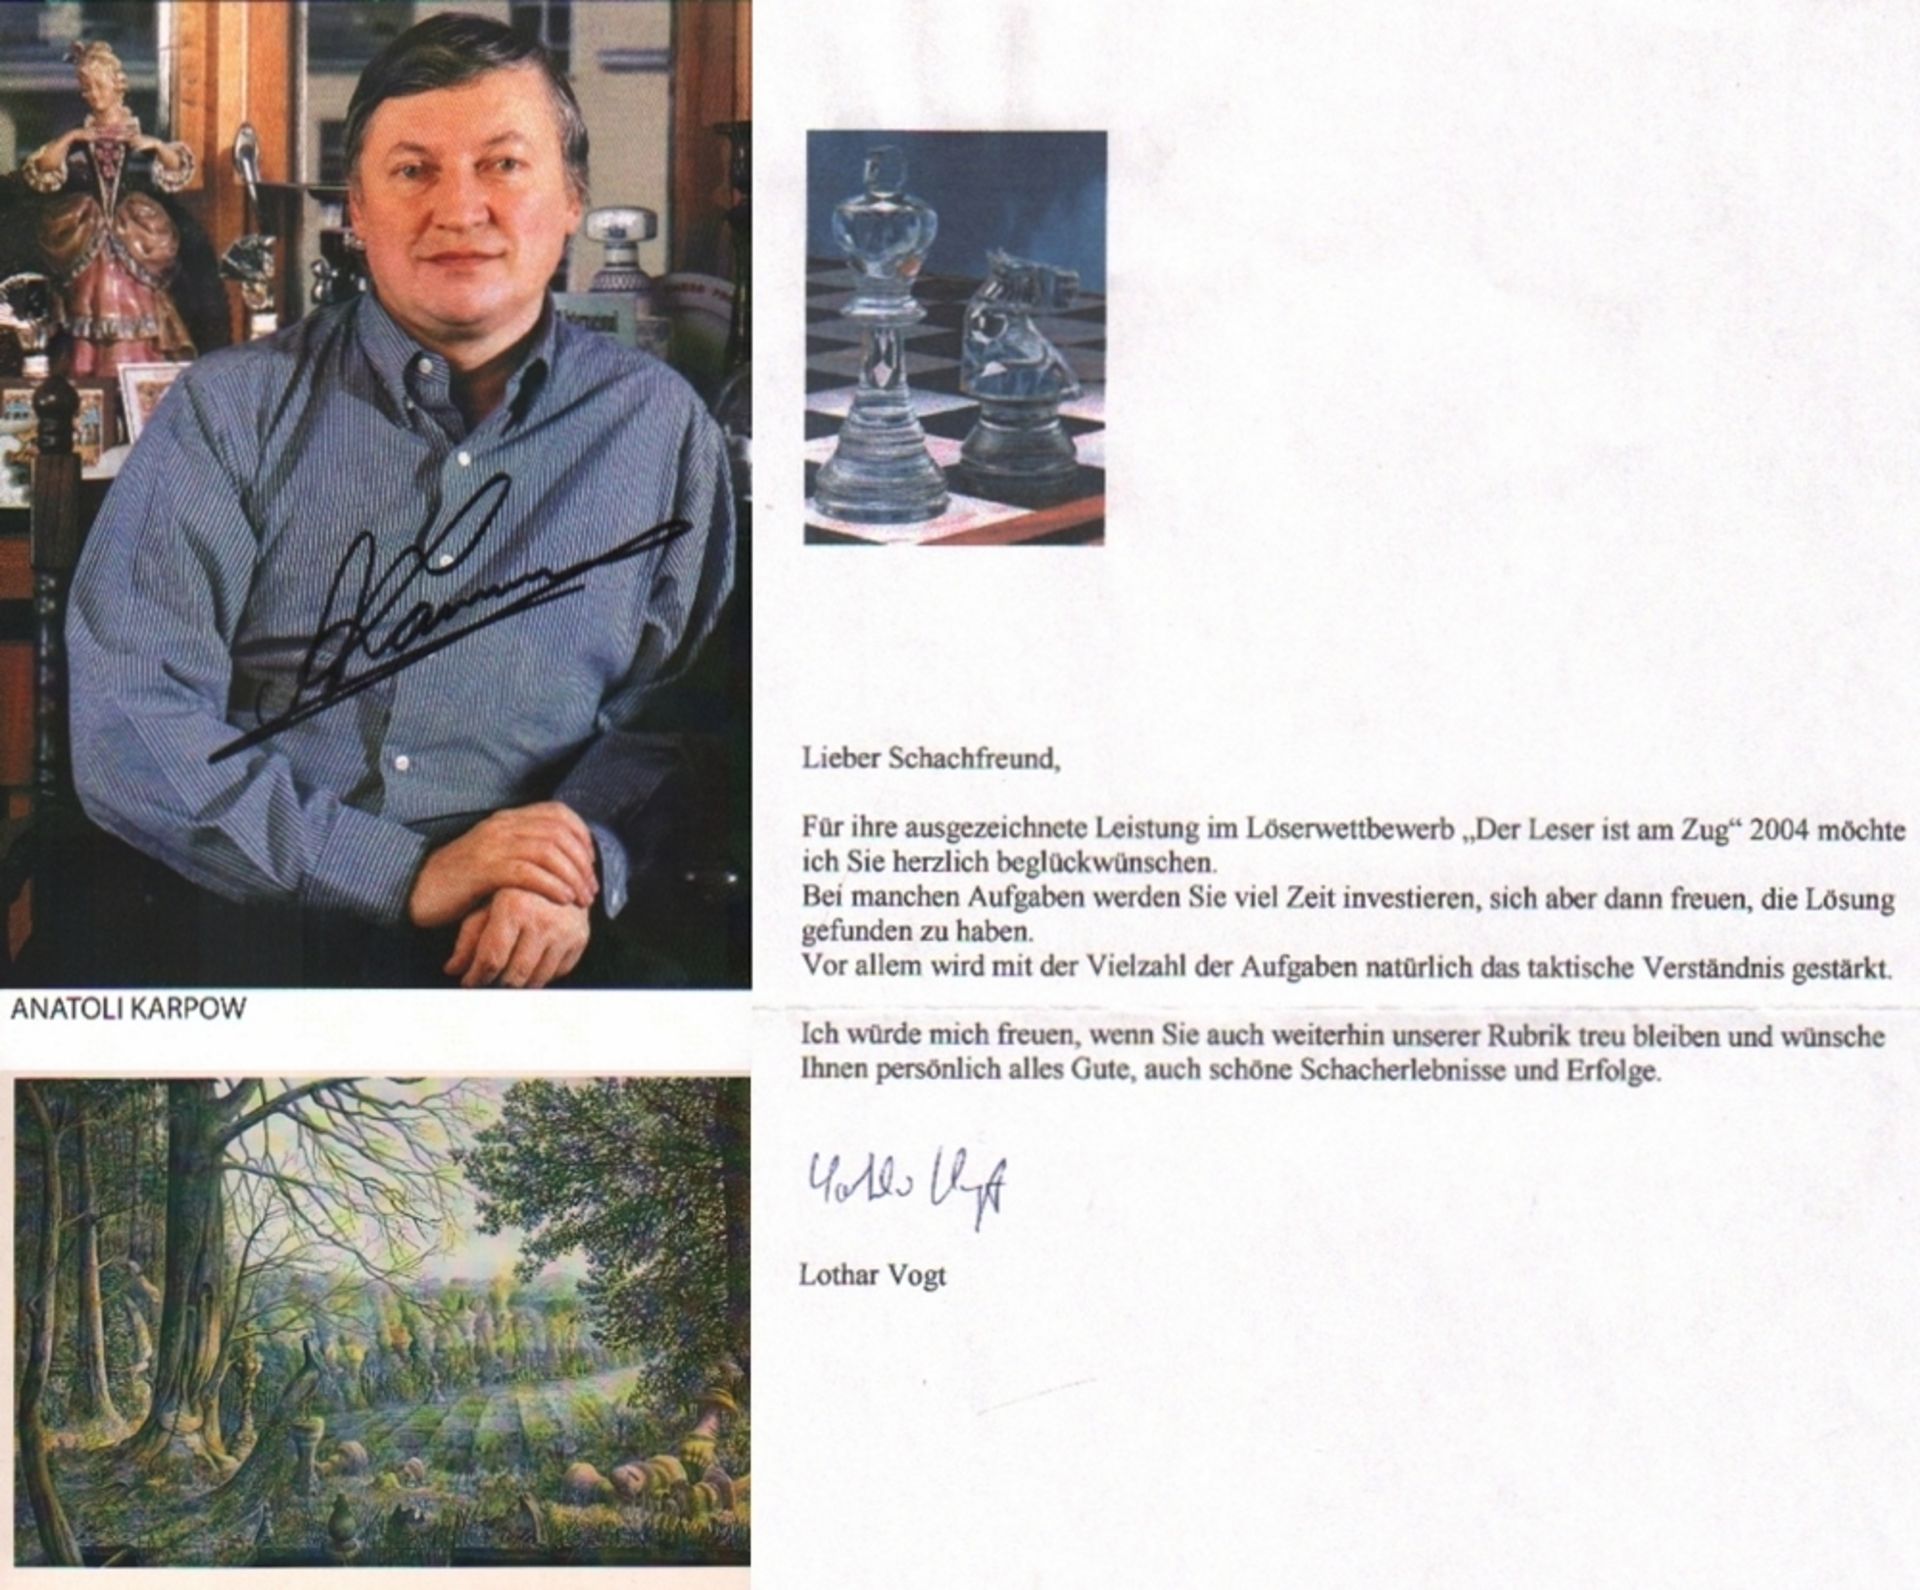 Karpow, A. Farbige Autogrammkarte mit einem Porträt und eigenhändiger Unterschrift des ehemaligen